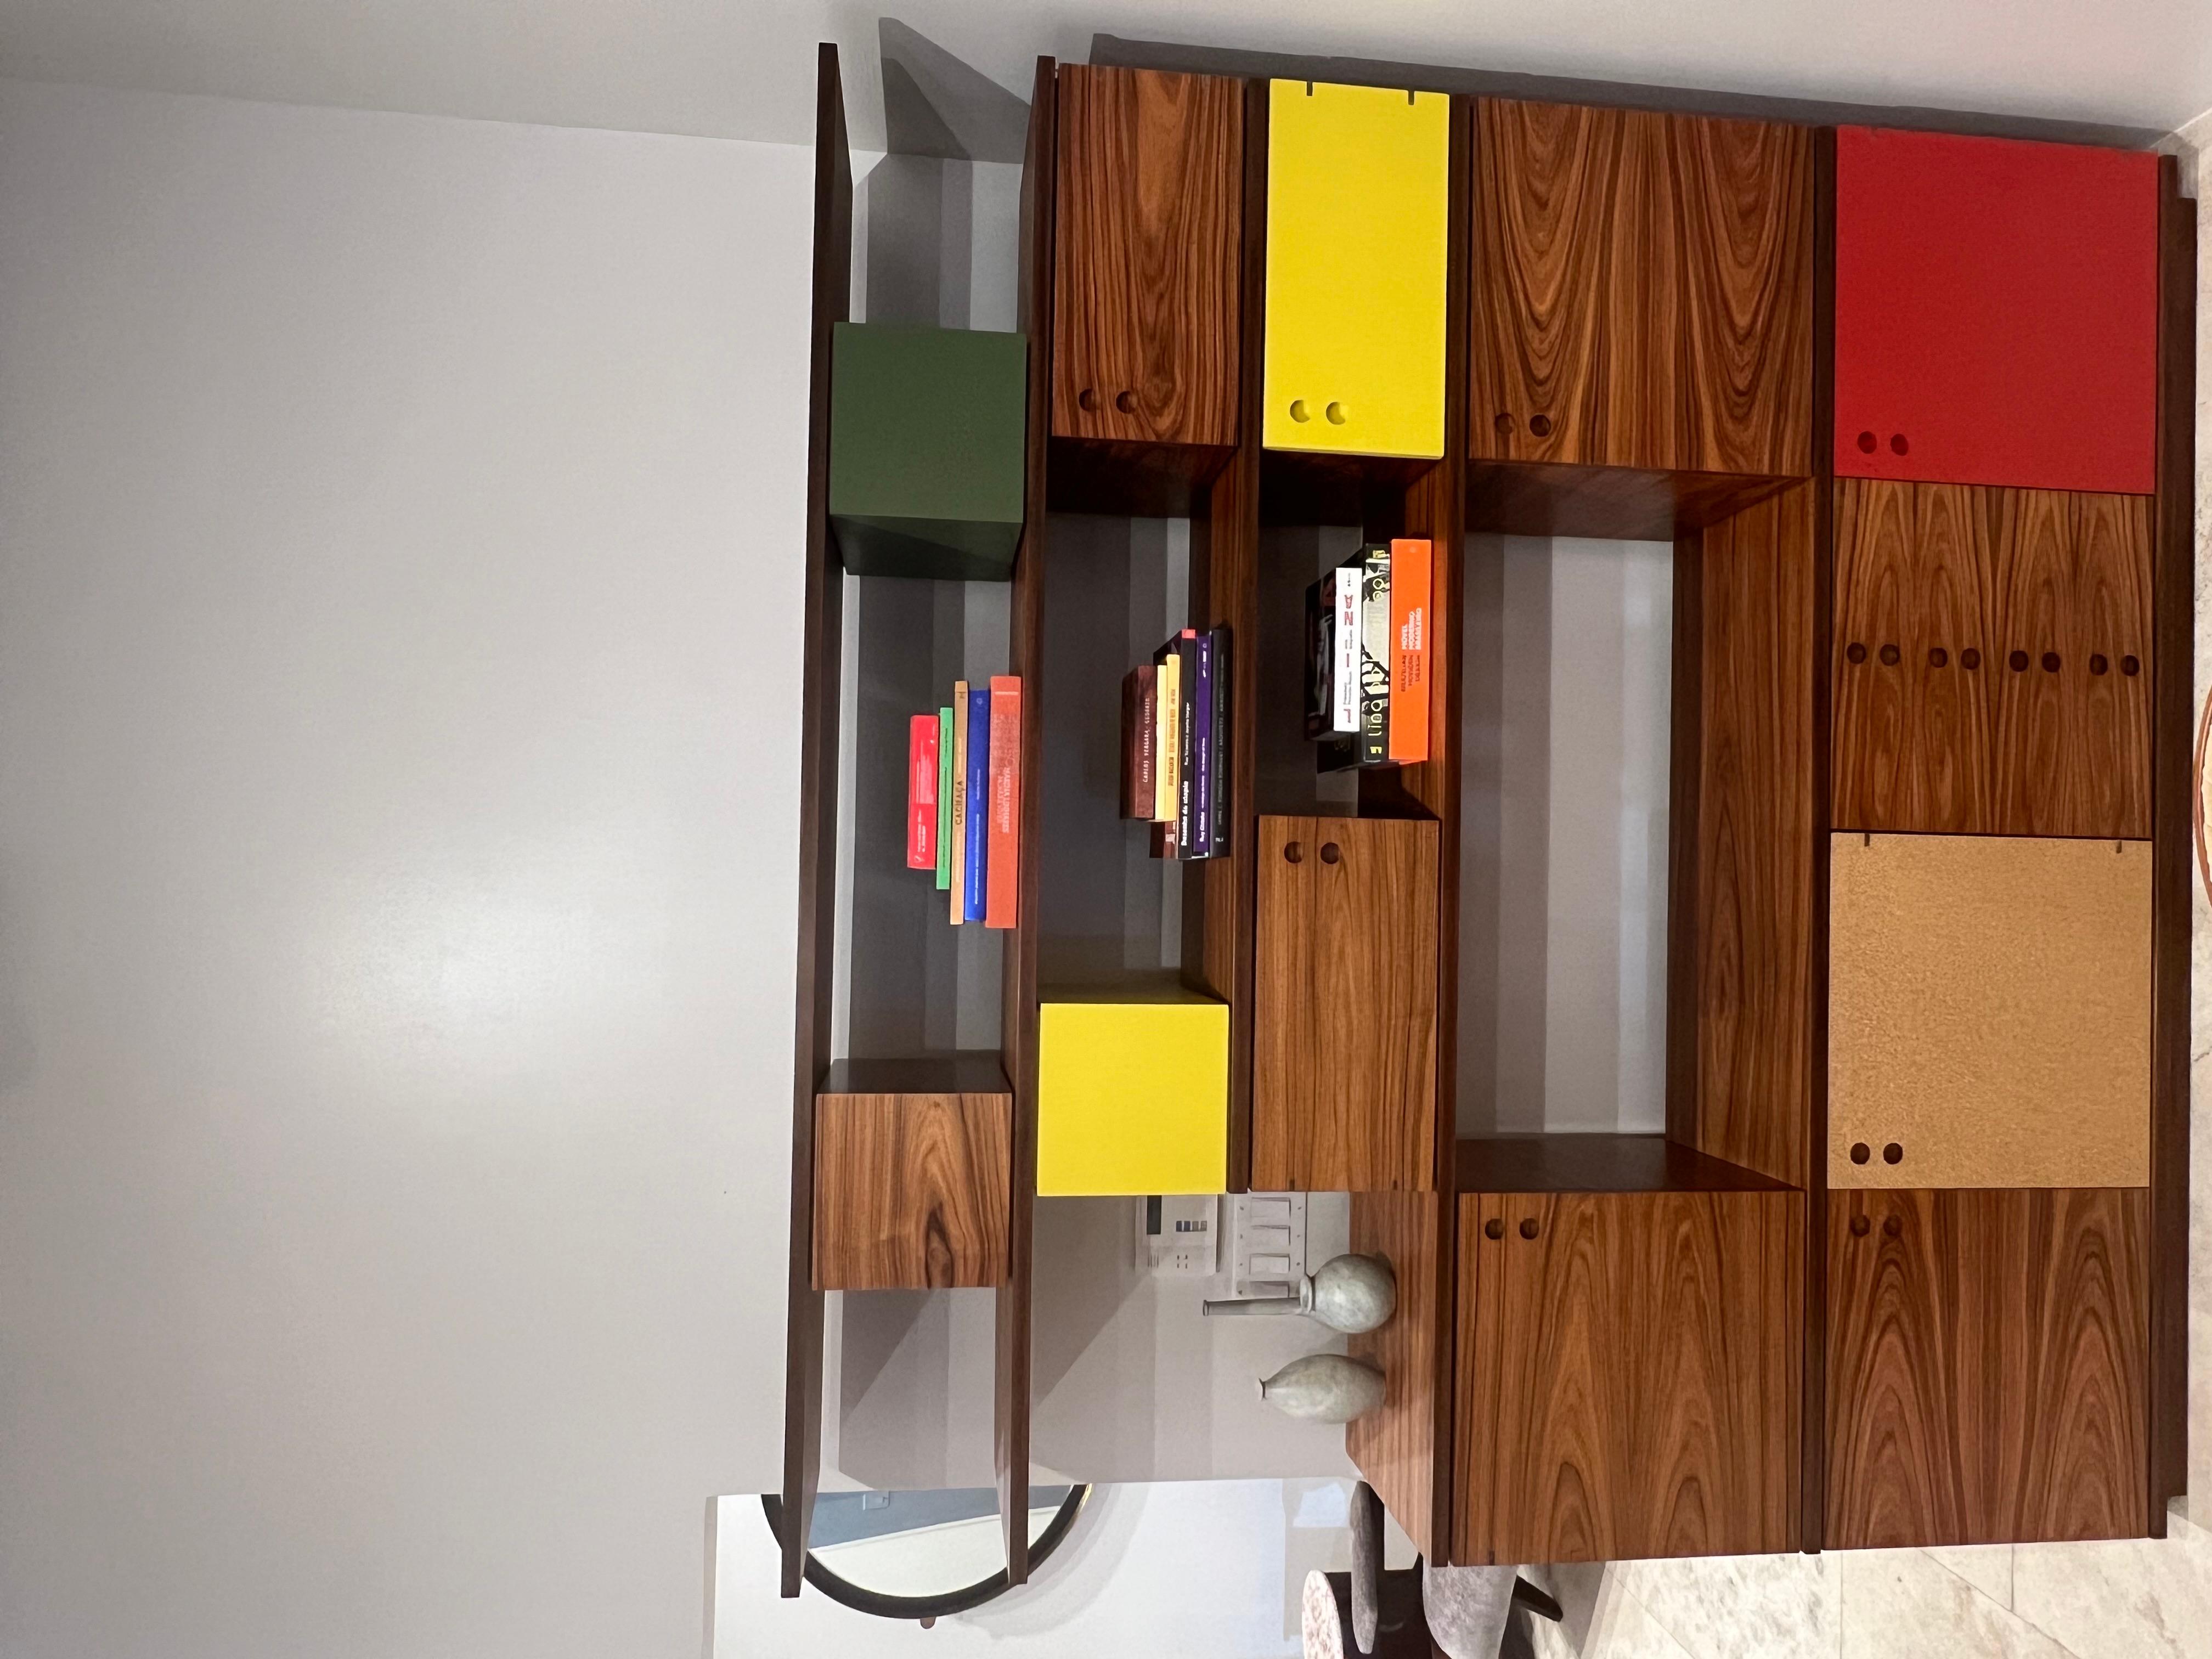 Kovacs Bücherregal
1959 / neu aufgelegt2019

Eine Kollektion modularer Module aus Pau-Ferro-Holz, entworfen von Jorge Zalszupin in den 1950er/60er Jahren, inspiriert von der Anordnung und den Farben, die die Familie Kovacs in den 1960er Jahren in